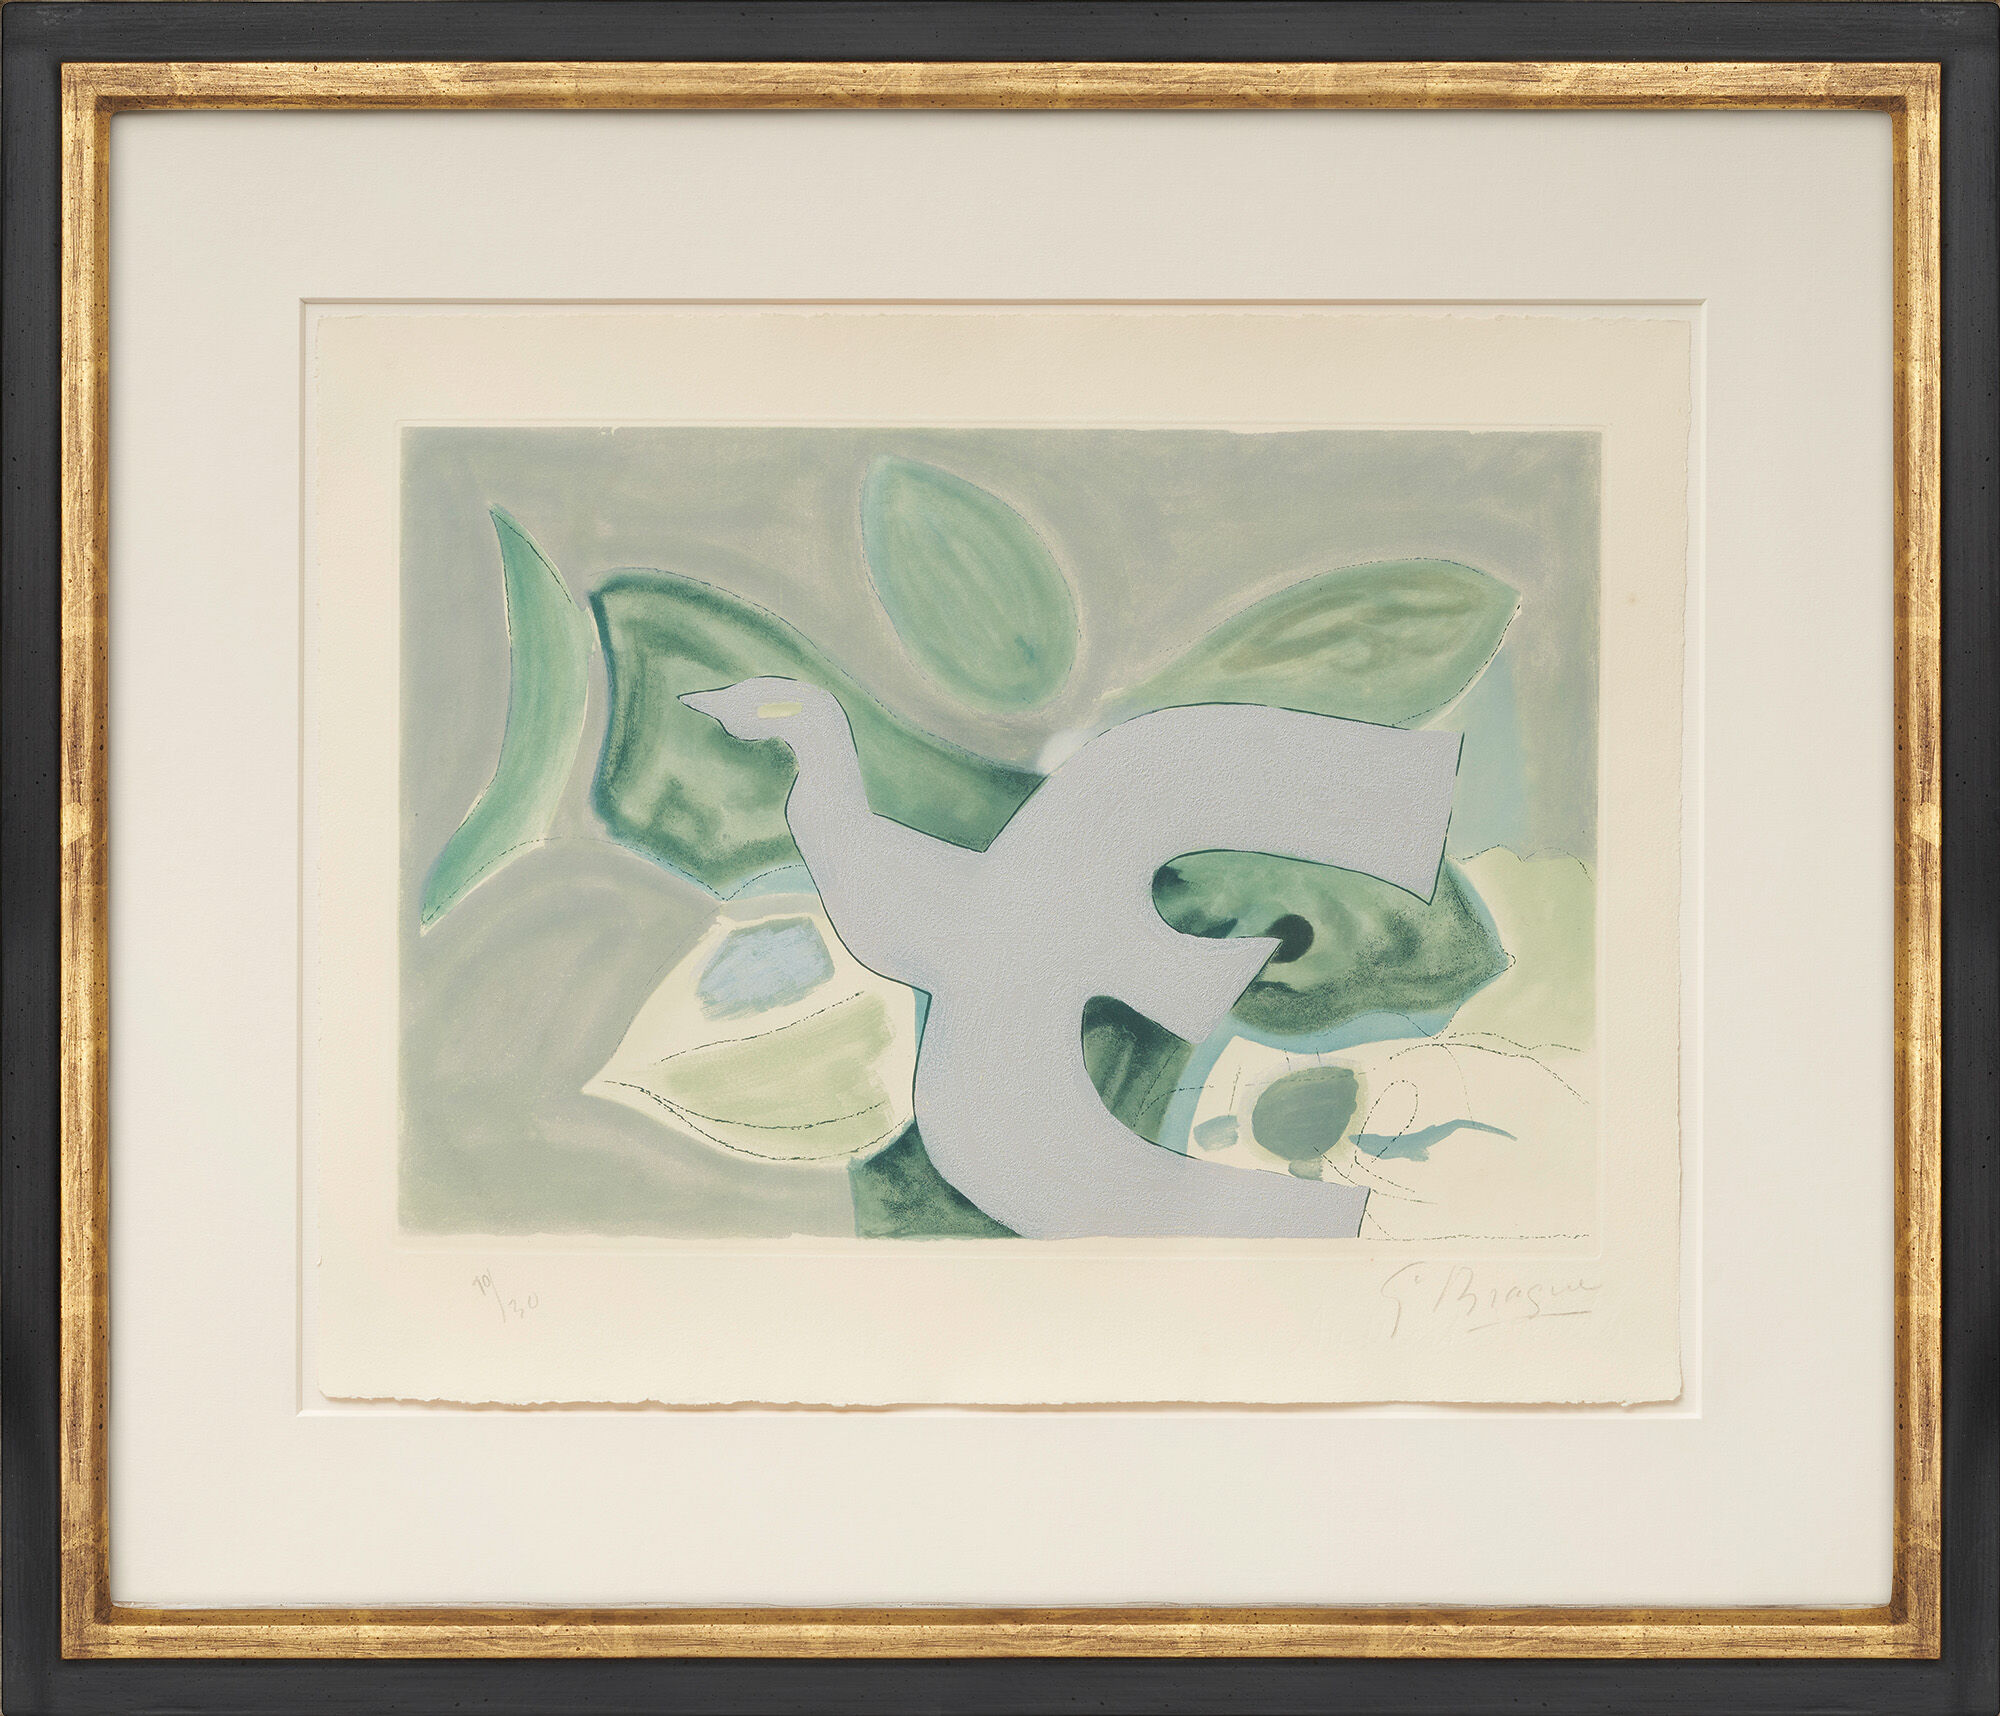 Bild "Oiseau gris sur fond vert" (1962) von Georges Braque